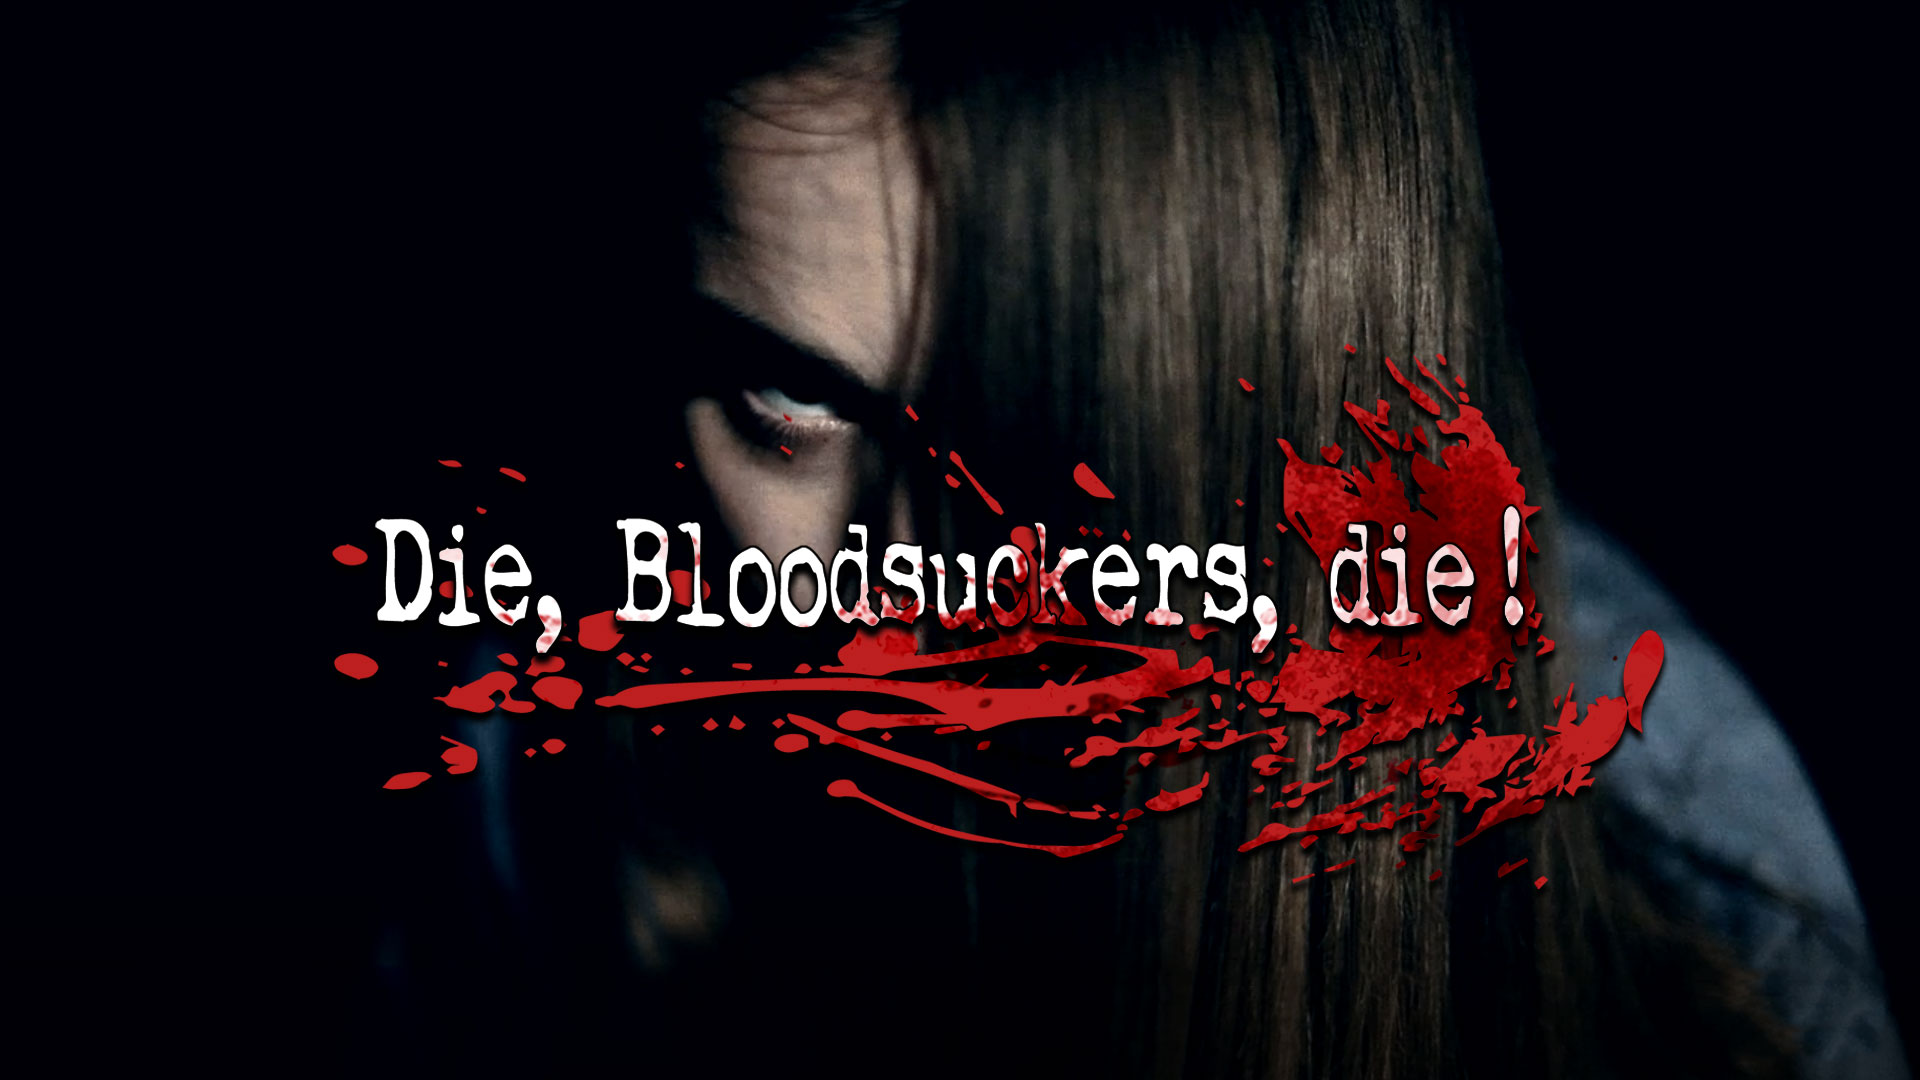 Die! Bloodsuckers, die!:  Meet Kristina James